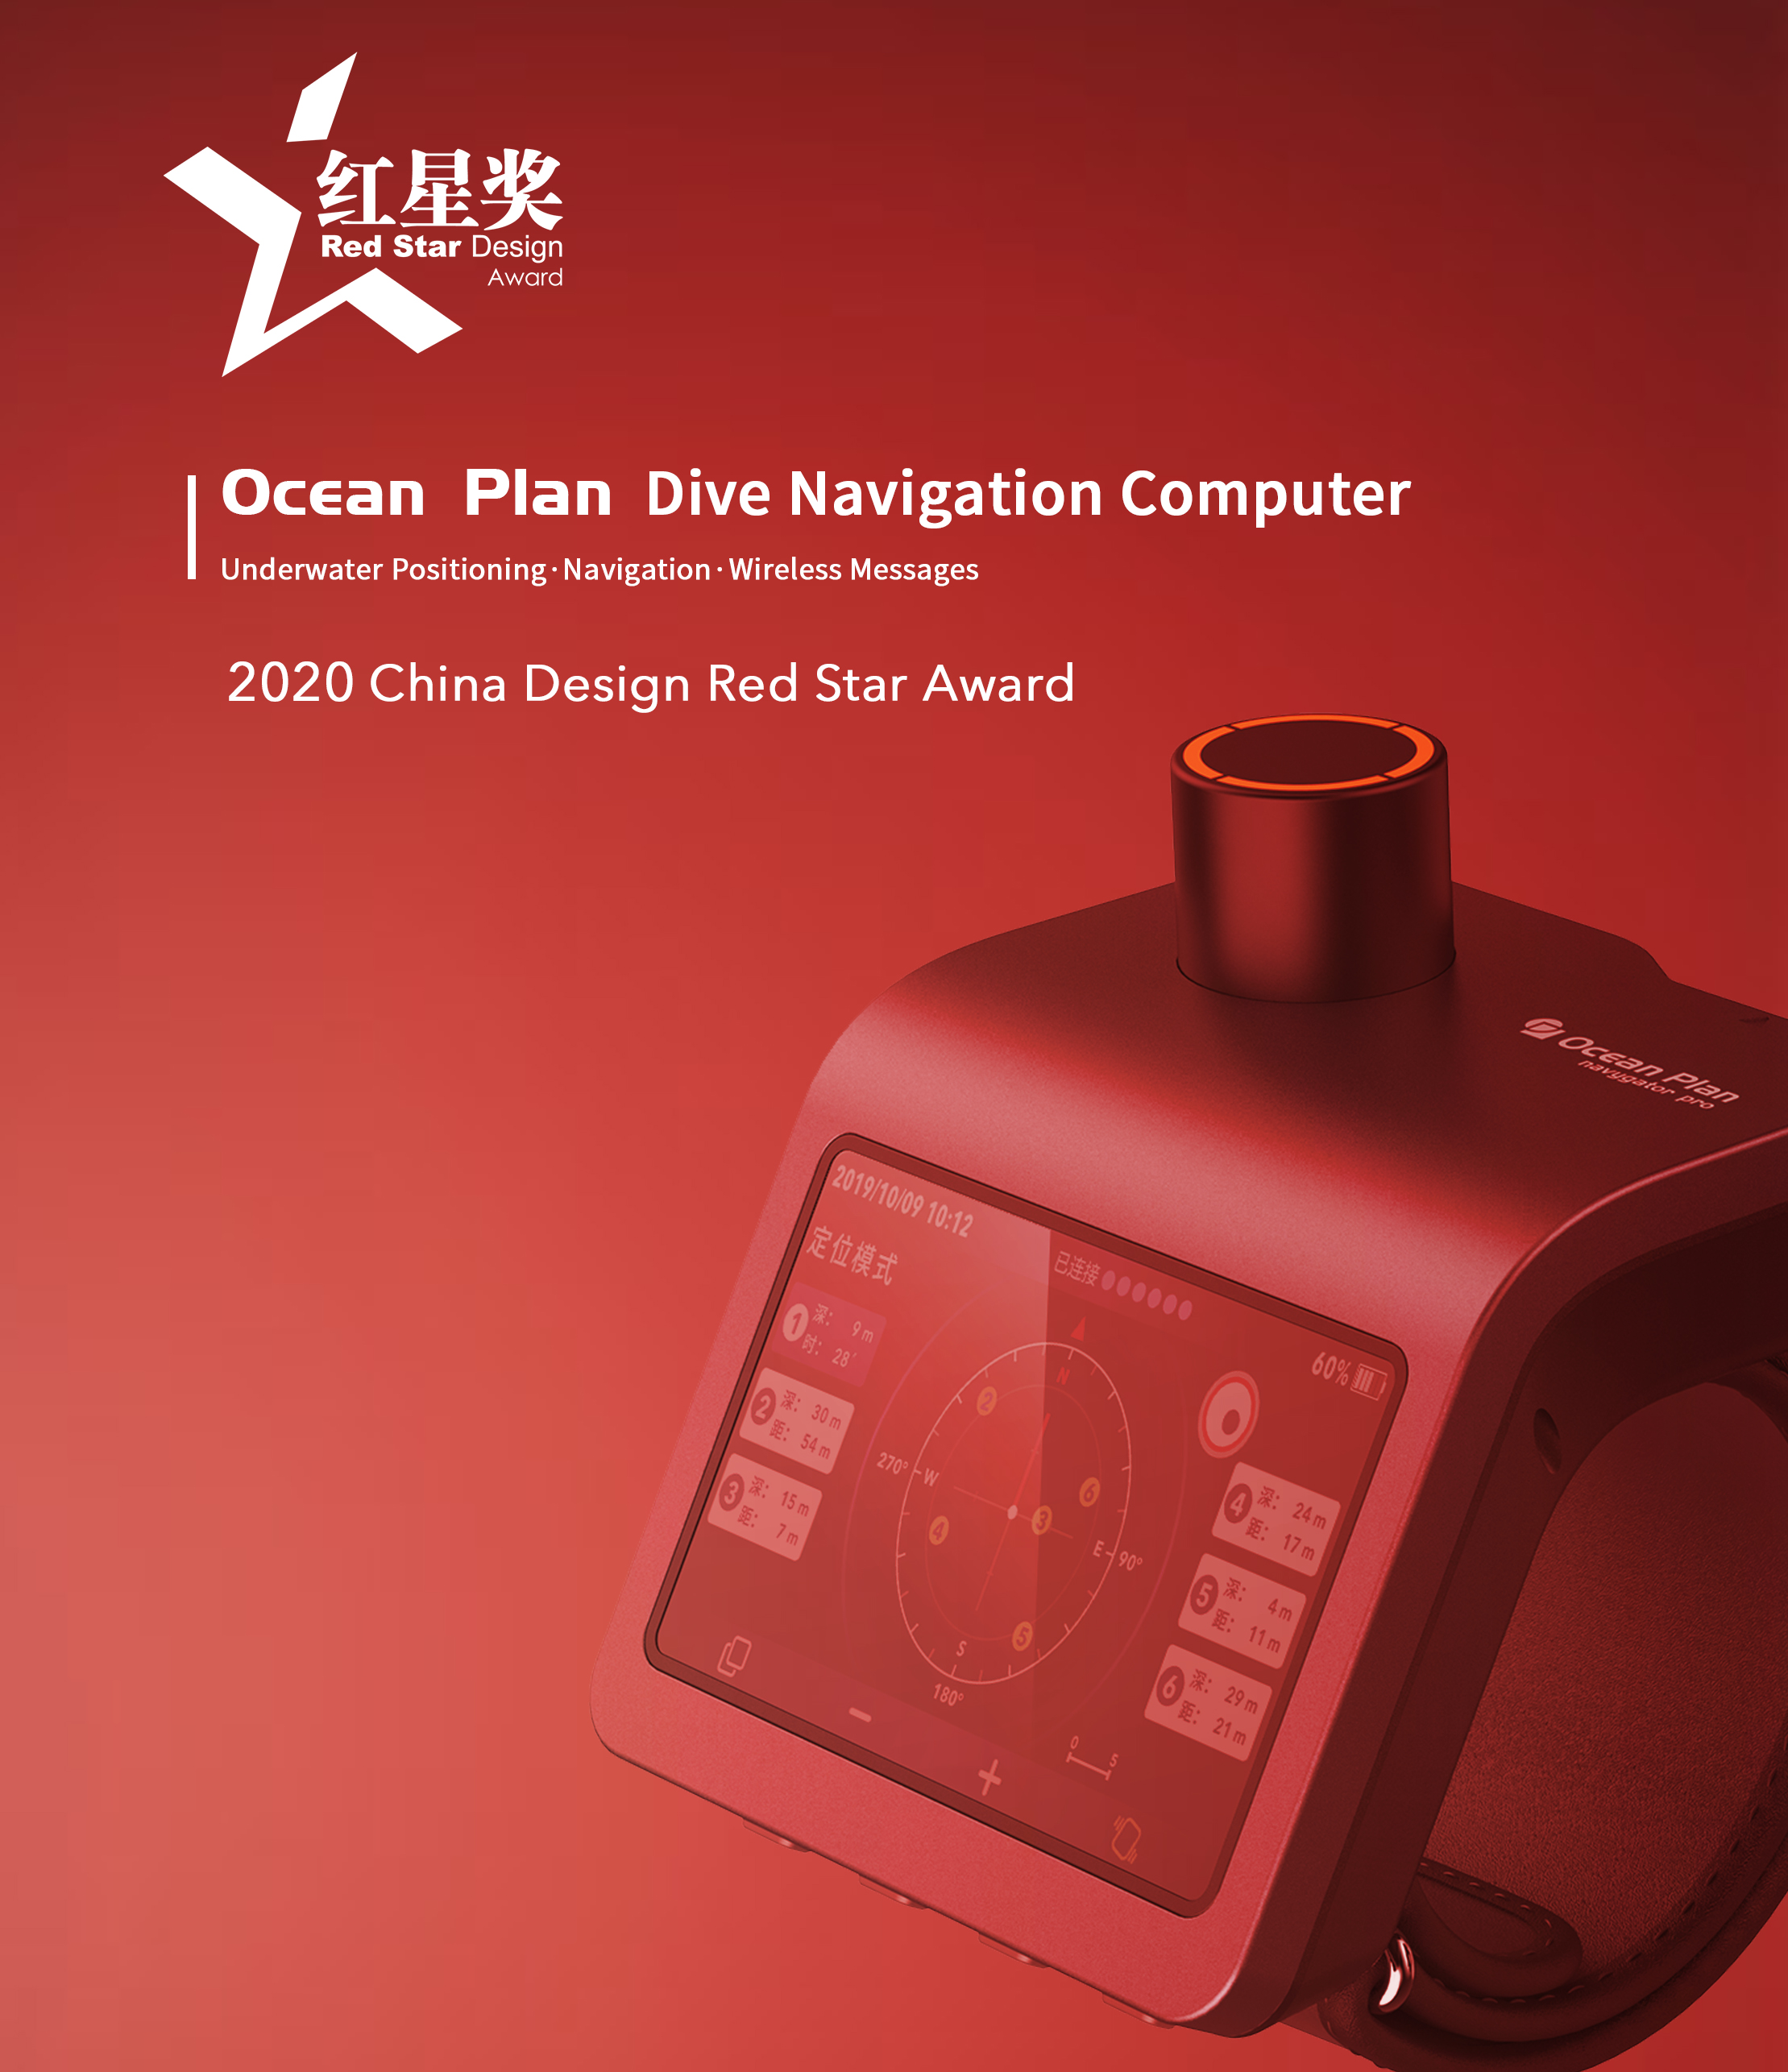 Ocean Plan Won the 2020 China Design Red Star Award